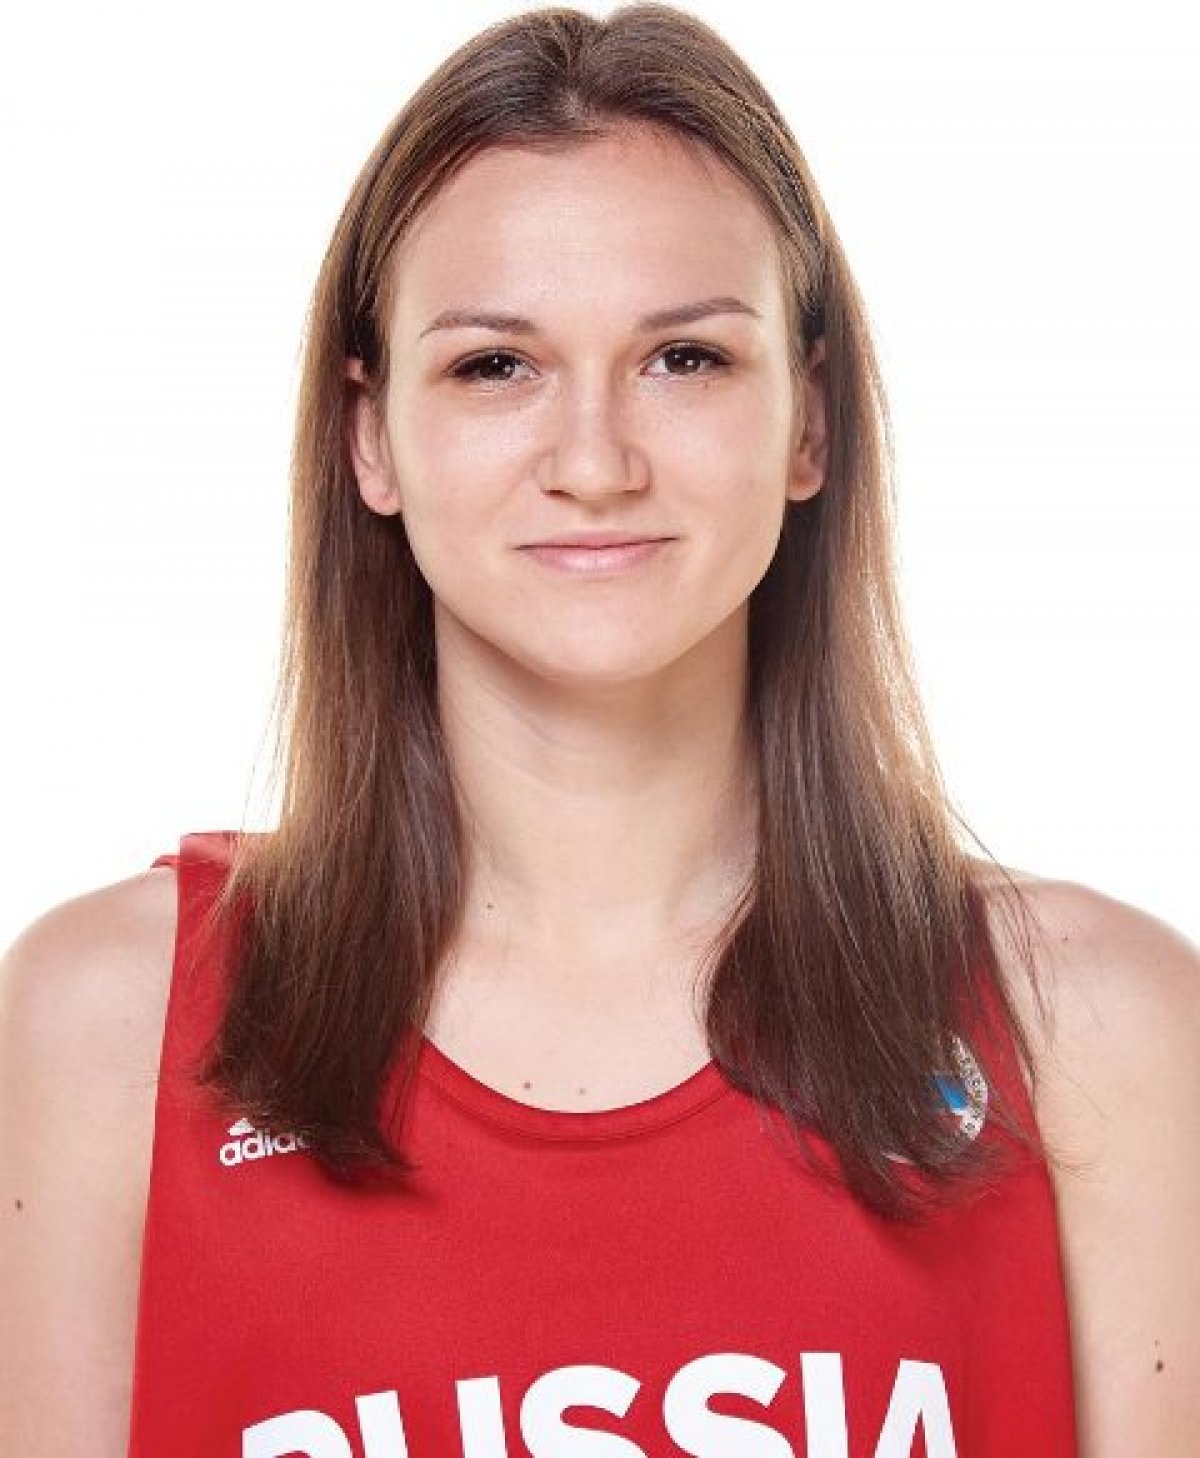 Баскетболистка и студентка Виктория Черен претендует на участие в чемпионате Европы ⛹‍♀👍🏻